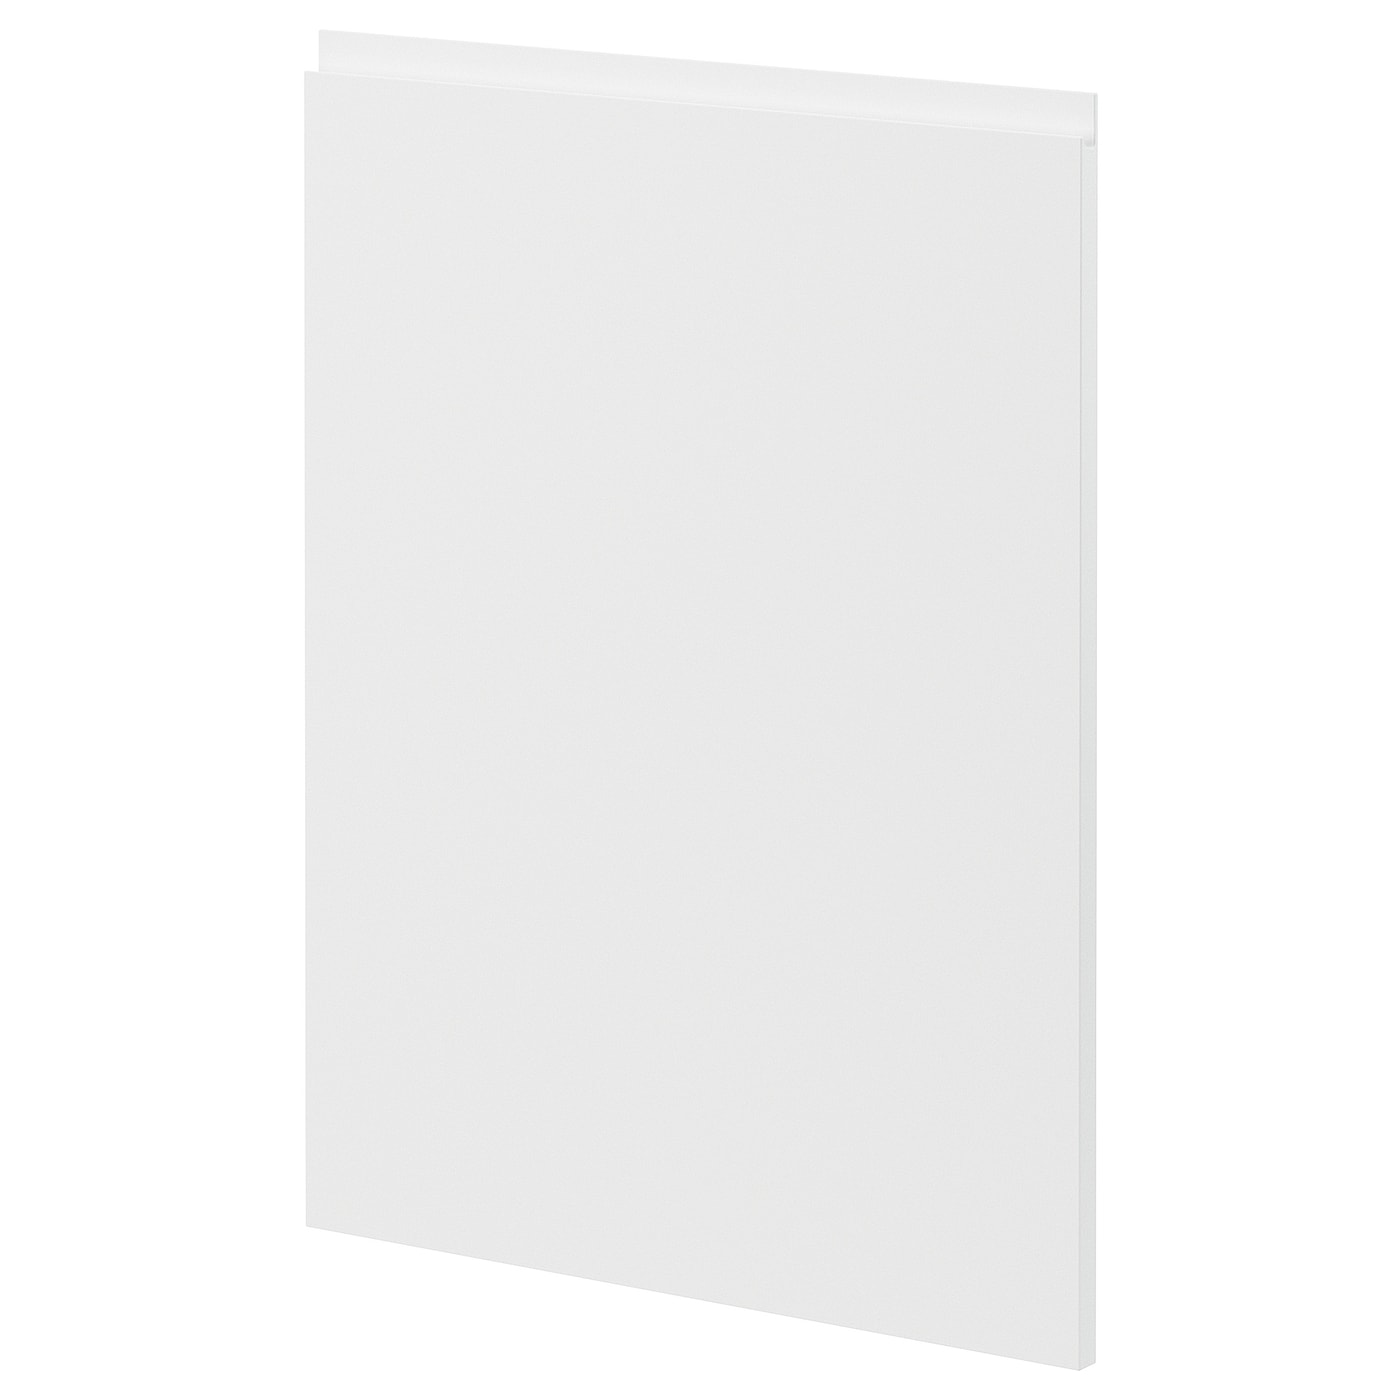 Фронтальная панель для посудомоечной машины - METOD IKEA/ МЕТОД ИКЕА, 88х60 см, белый